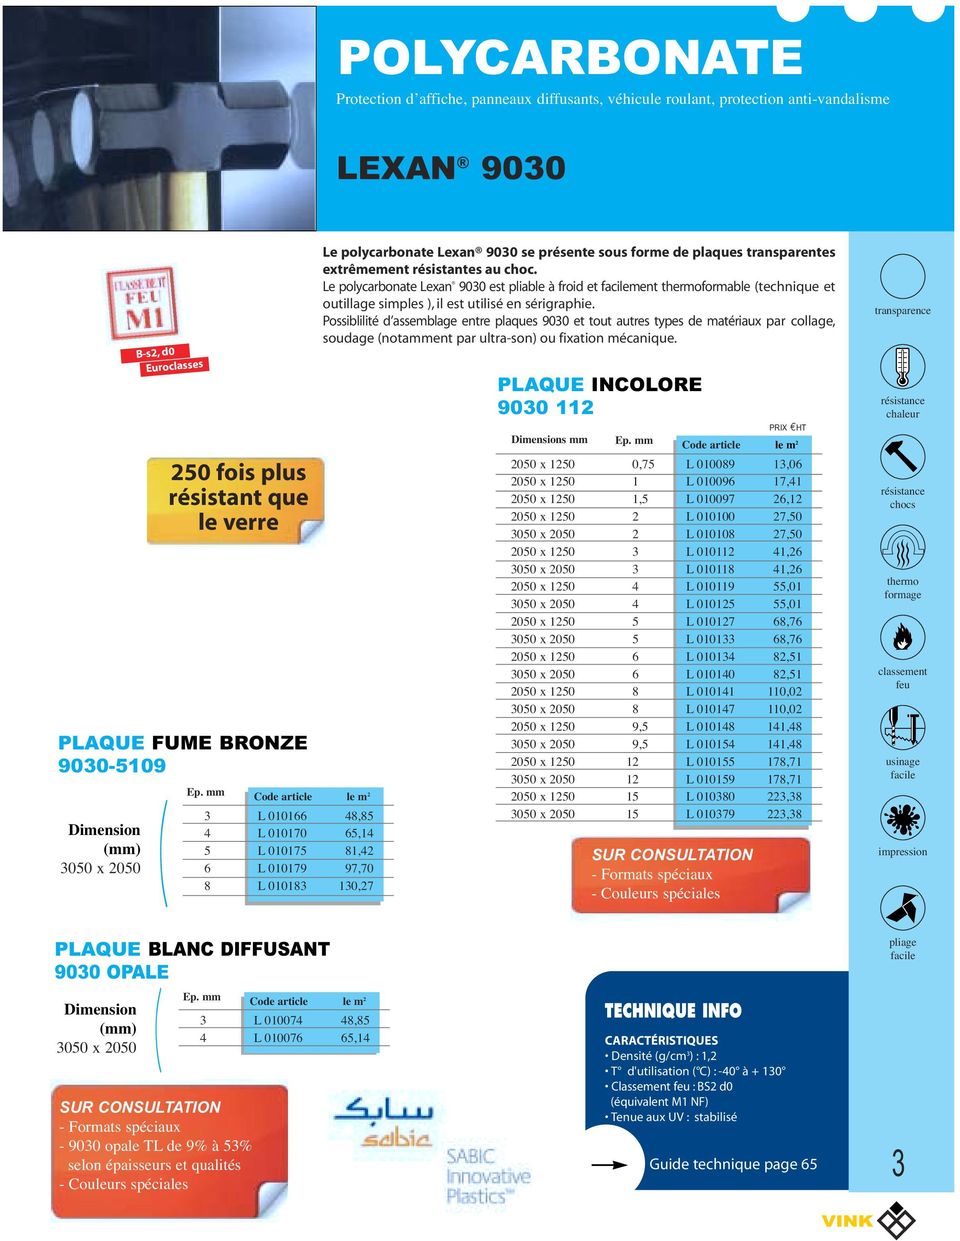 Le polycarbonate Lexan 900 est pliable à froid et facilement thermoformable technique et outillage simples ), il est utilisé en sérigraphie.